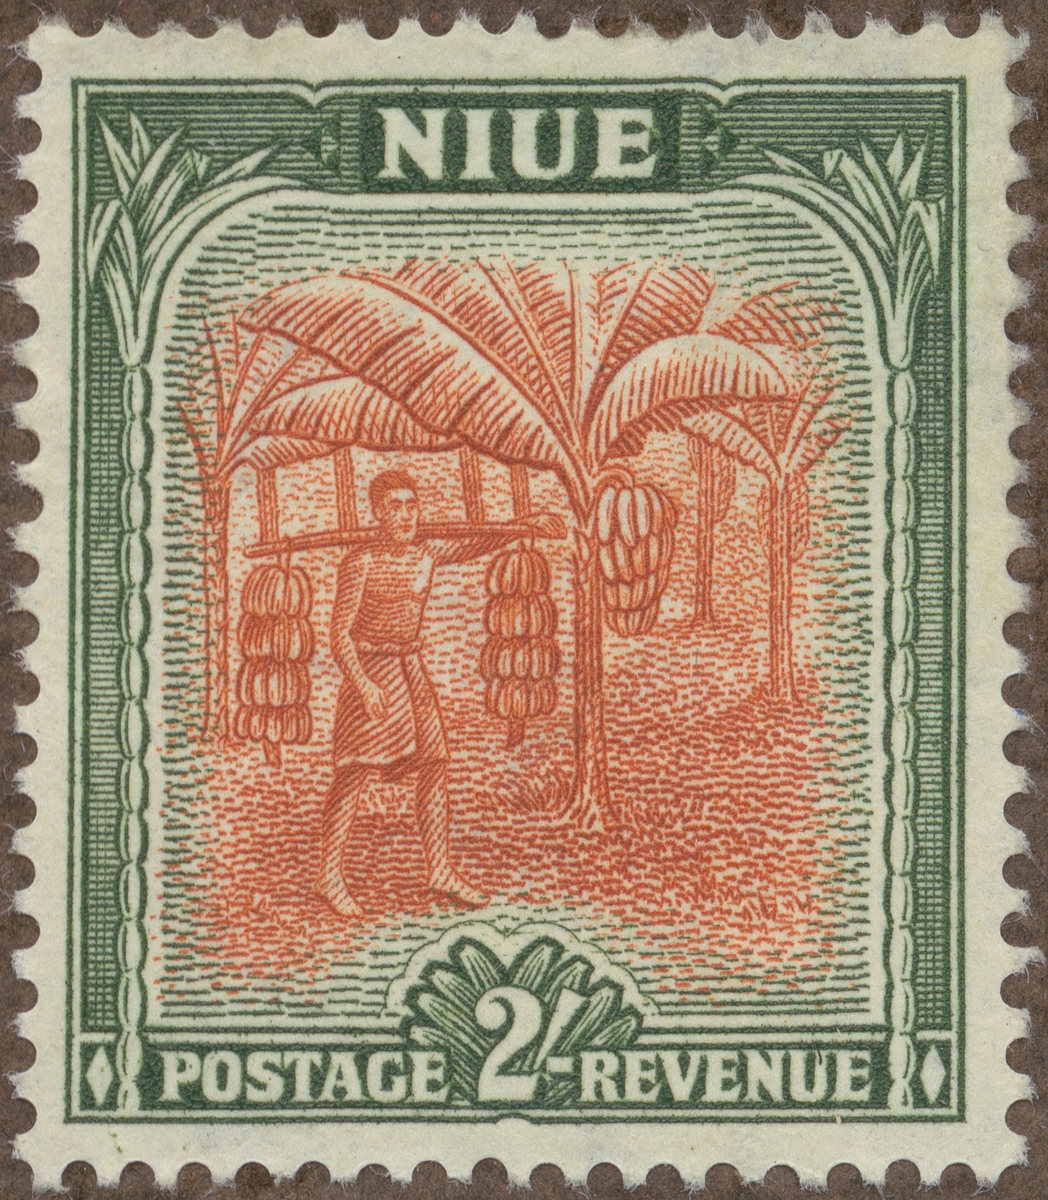 Frimärke ur Gösta Bodmans filatelistiska motivsamling, påbörjad 1950.
Frimärke från Niue, 1950. Motiv av bananer.